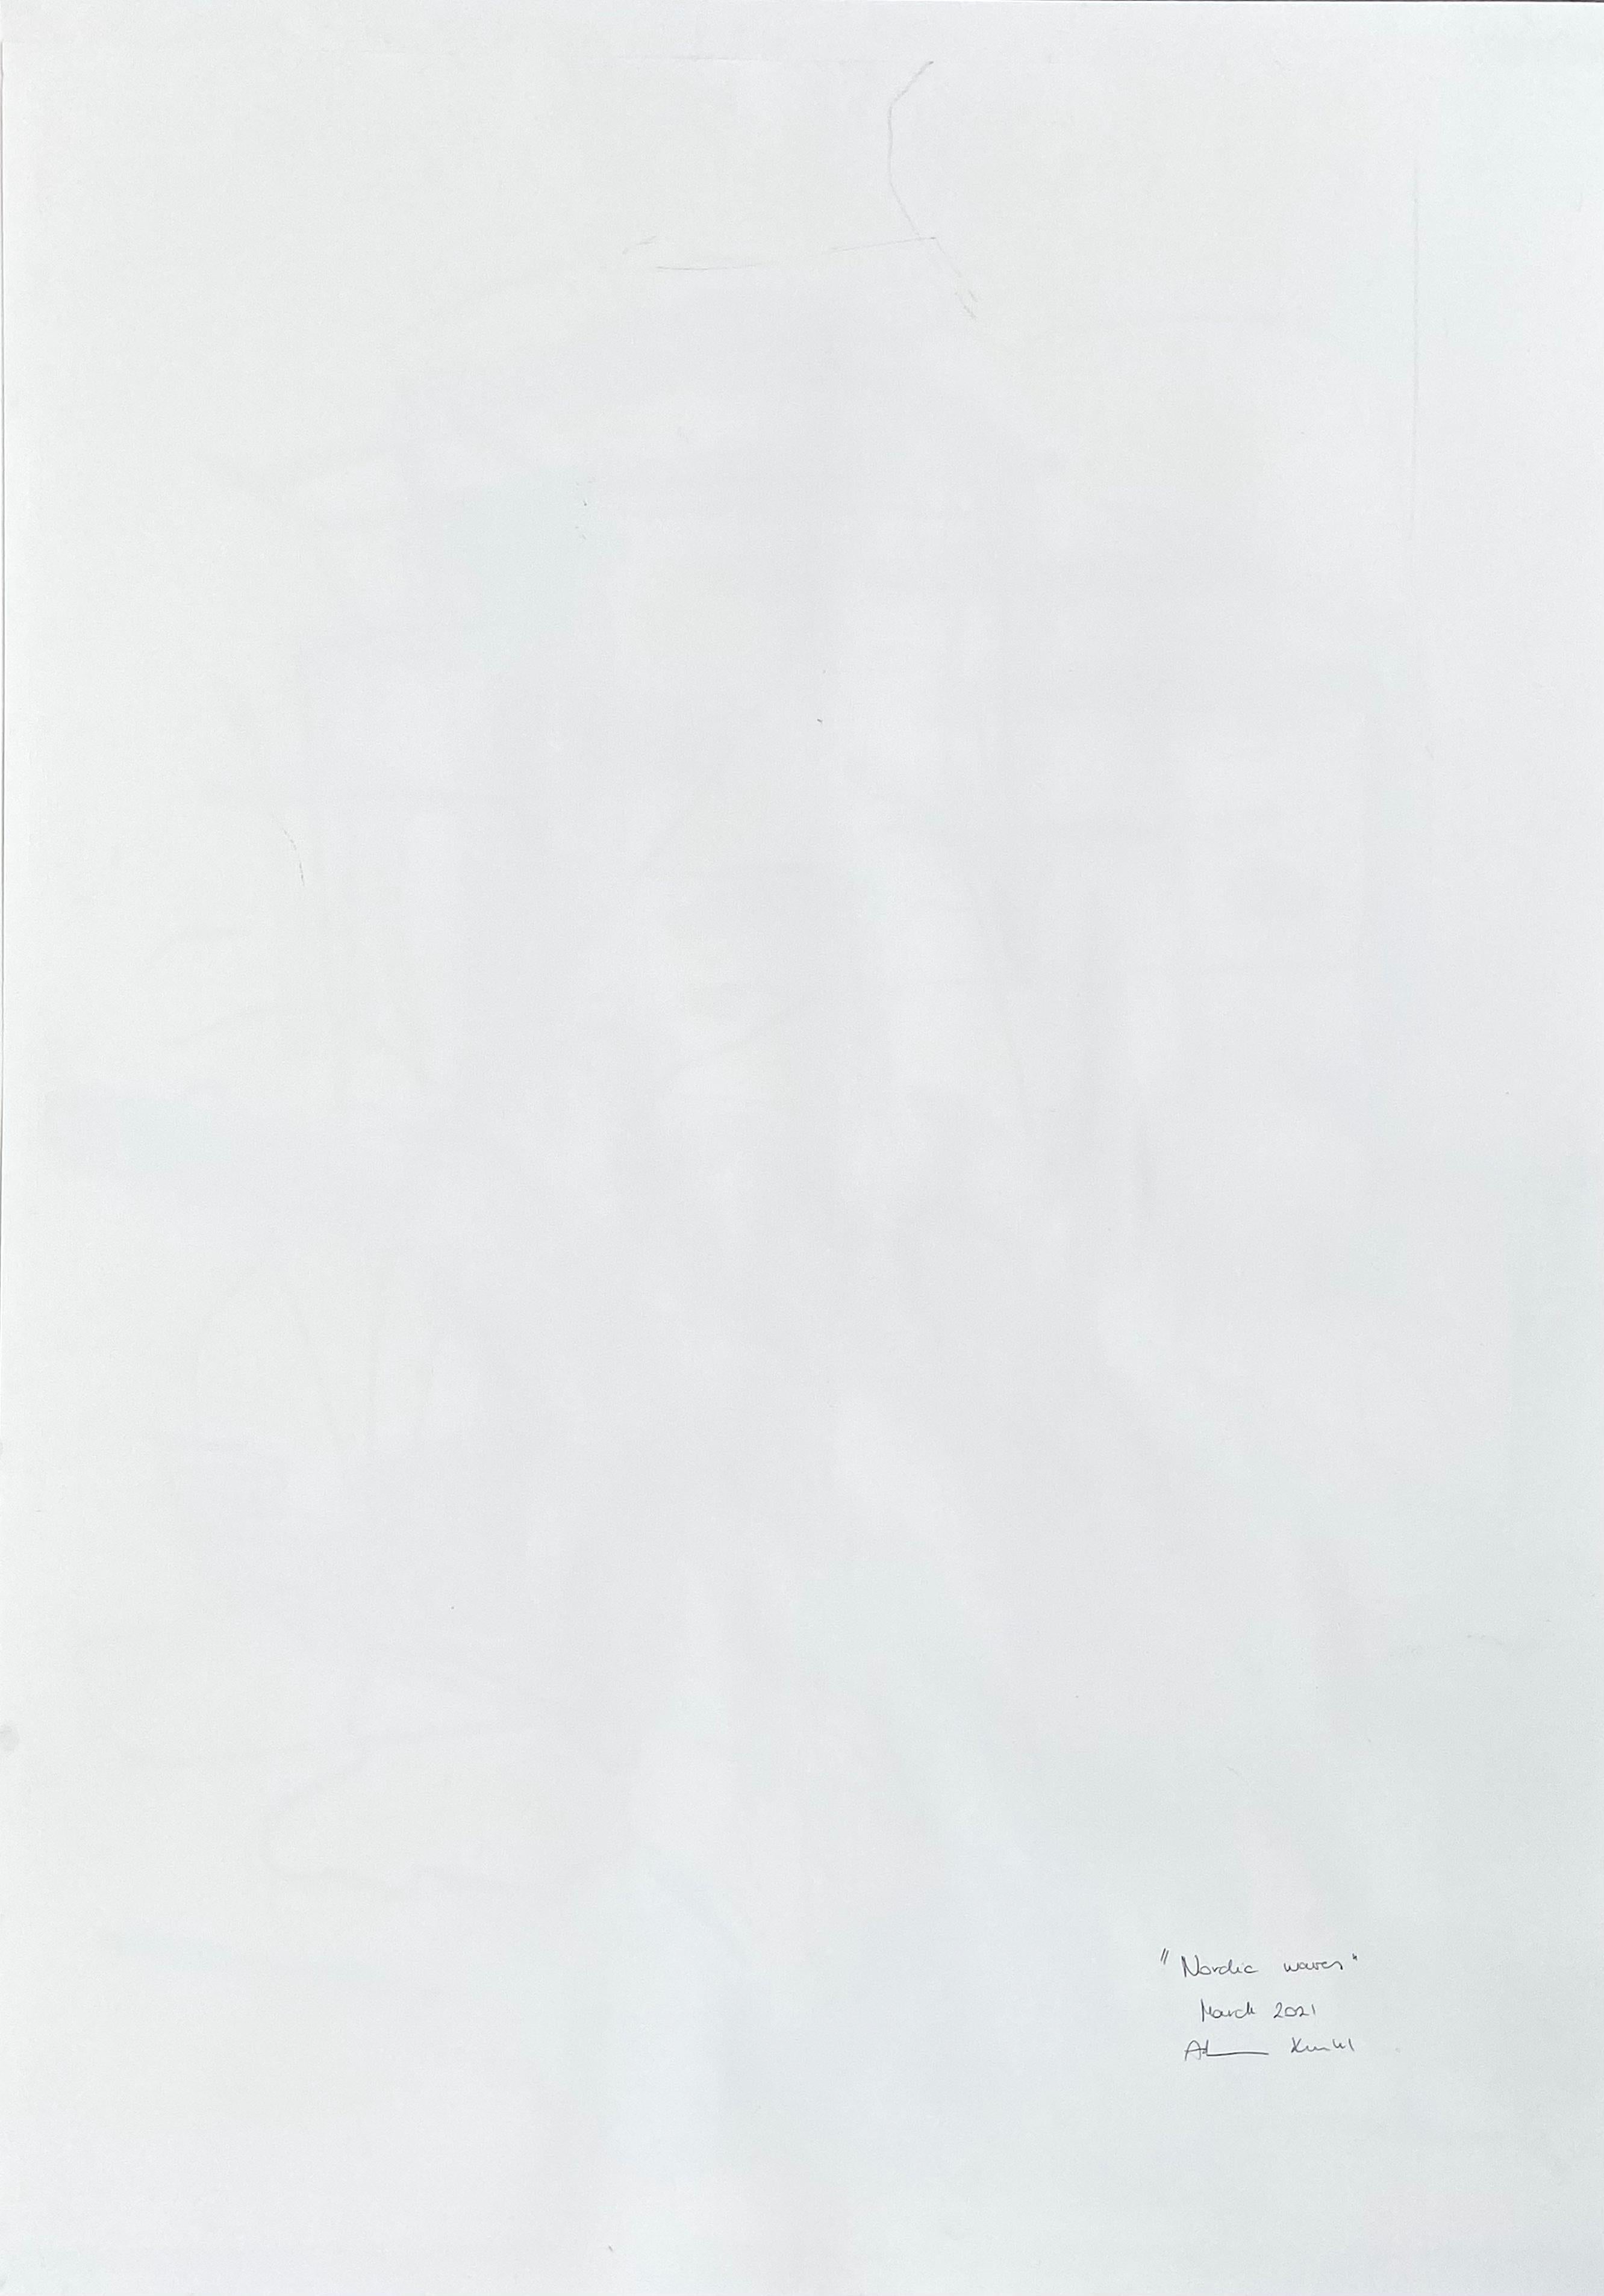 Nordic waves (Abstrakte Malerei)

Acryl, Kohle, Ölpastell und Graphit auf Papier - ungerahmt.

Kunstwerke exklusiv für IdeelArt.

Adrienn Krahls Gemälde drücken ein tiefes Gefühl von Dramatik und emotionalem Gewicht aus. Krahl arbeitet mit einer